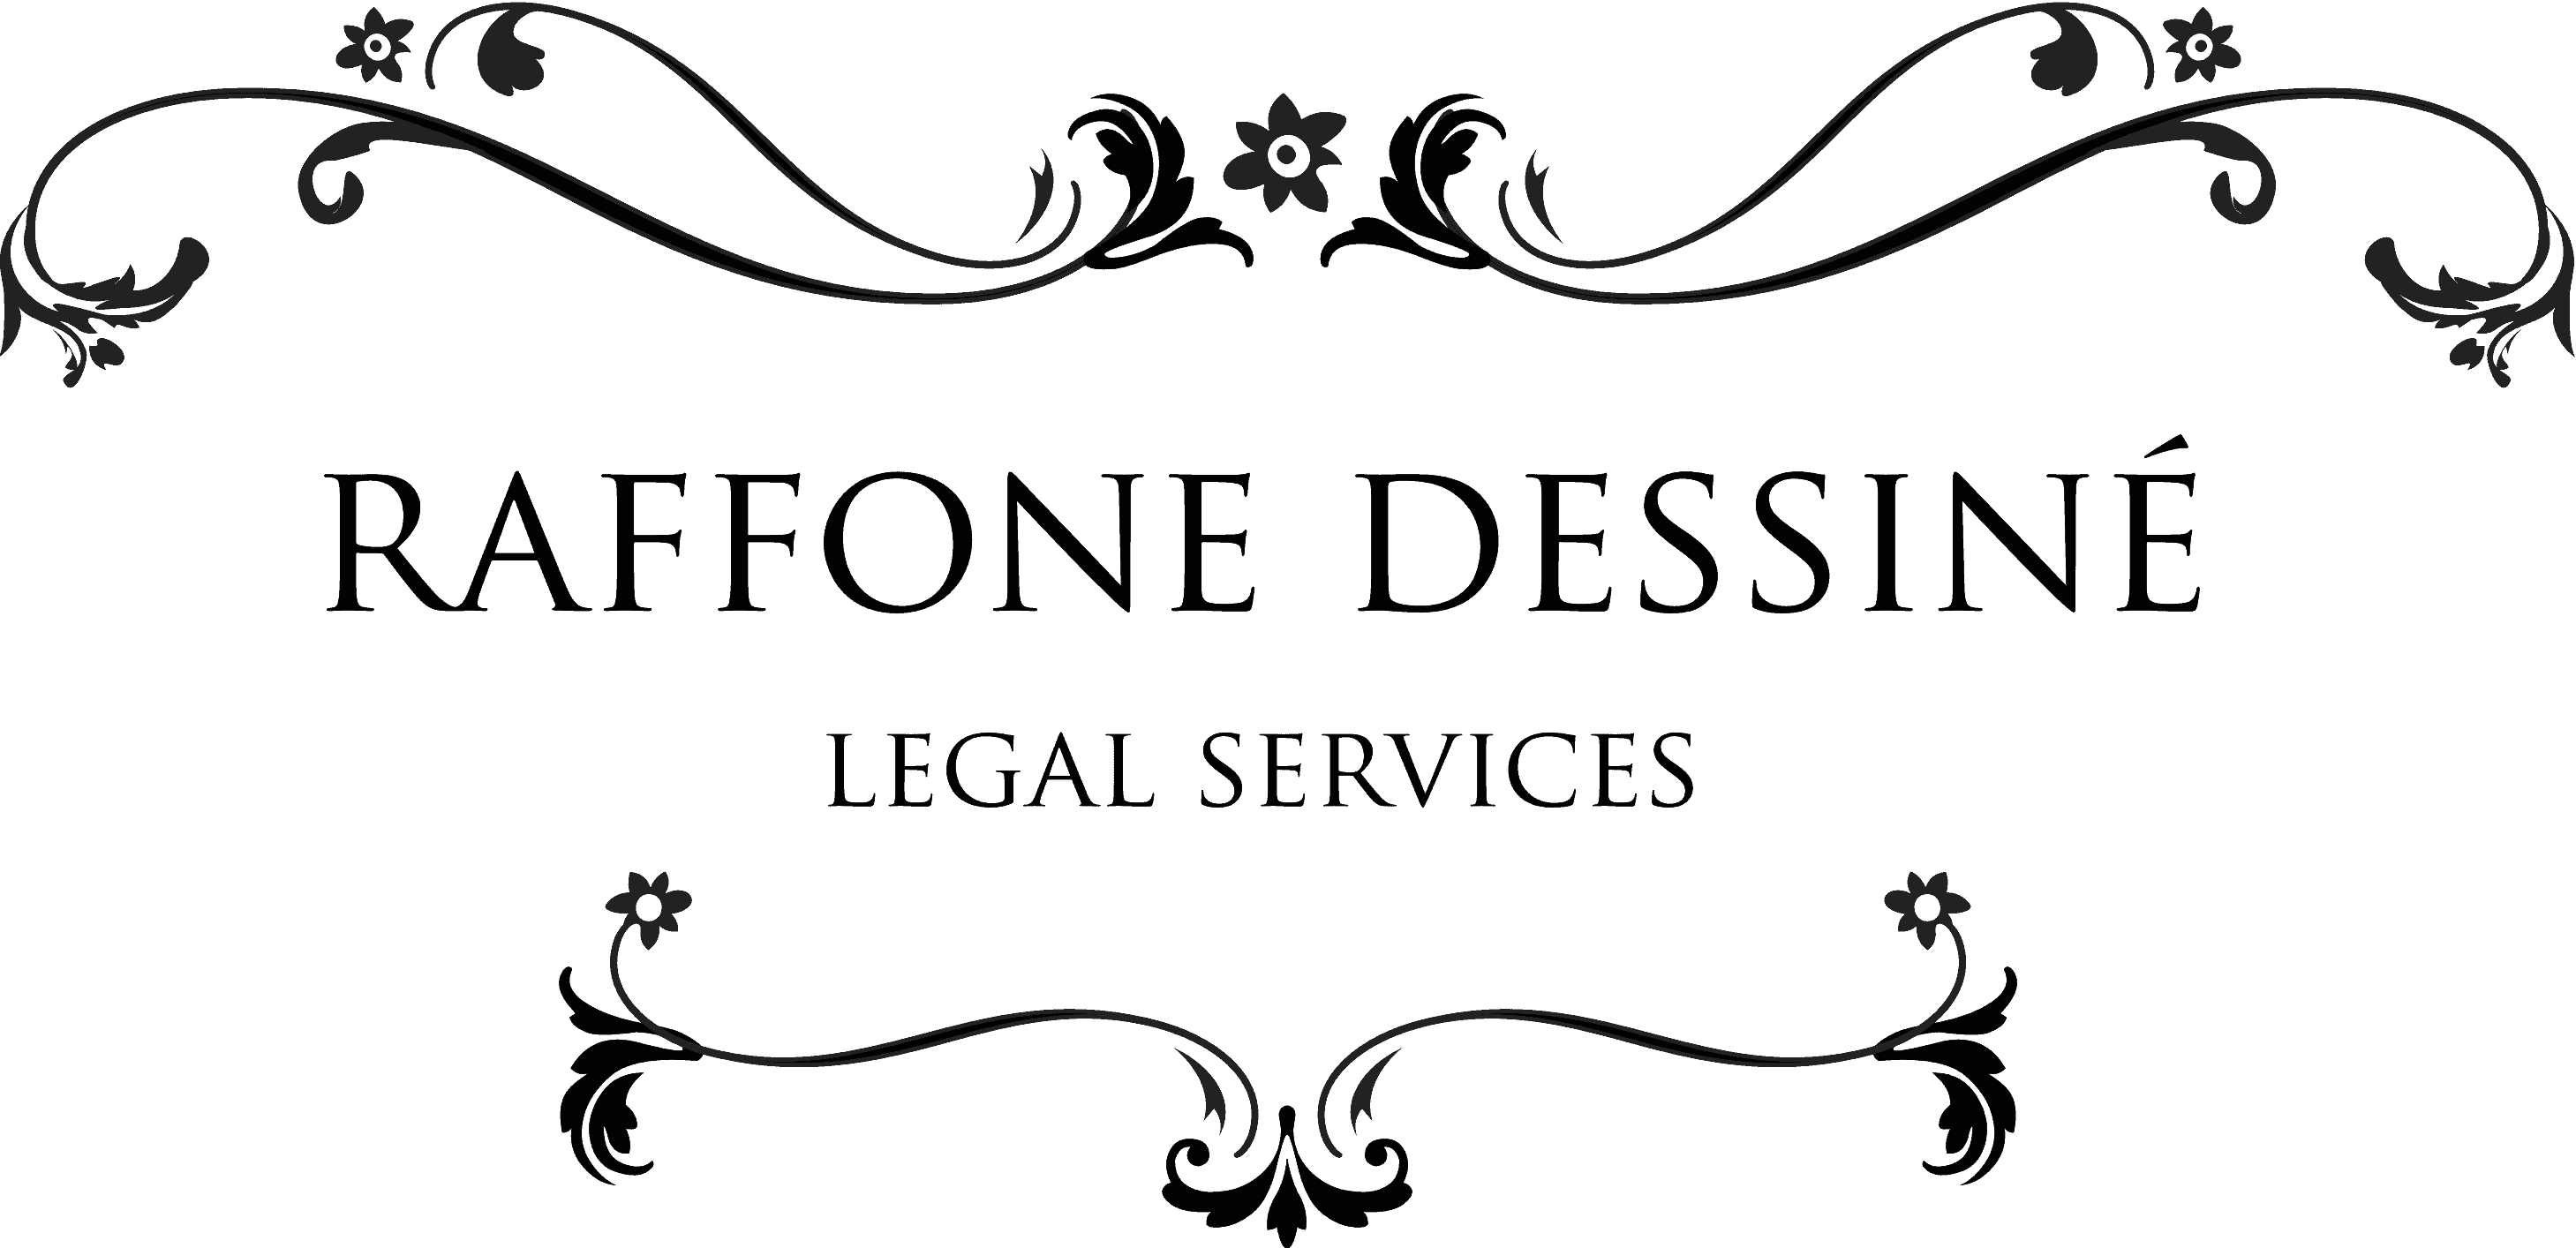 Raffone Dessiné Legal